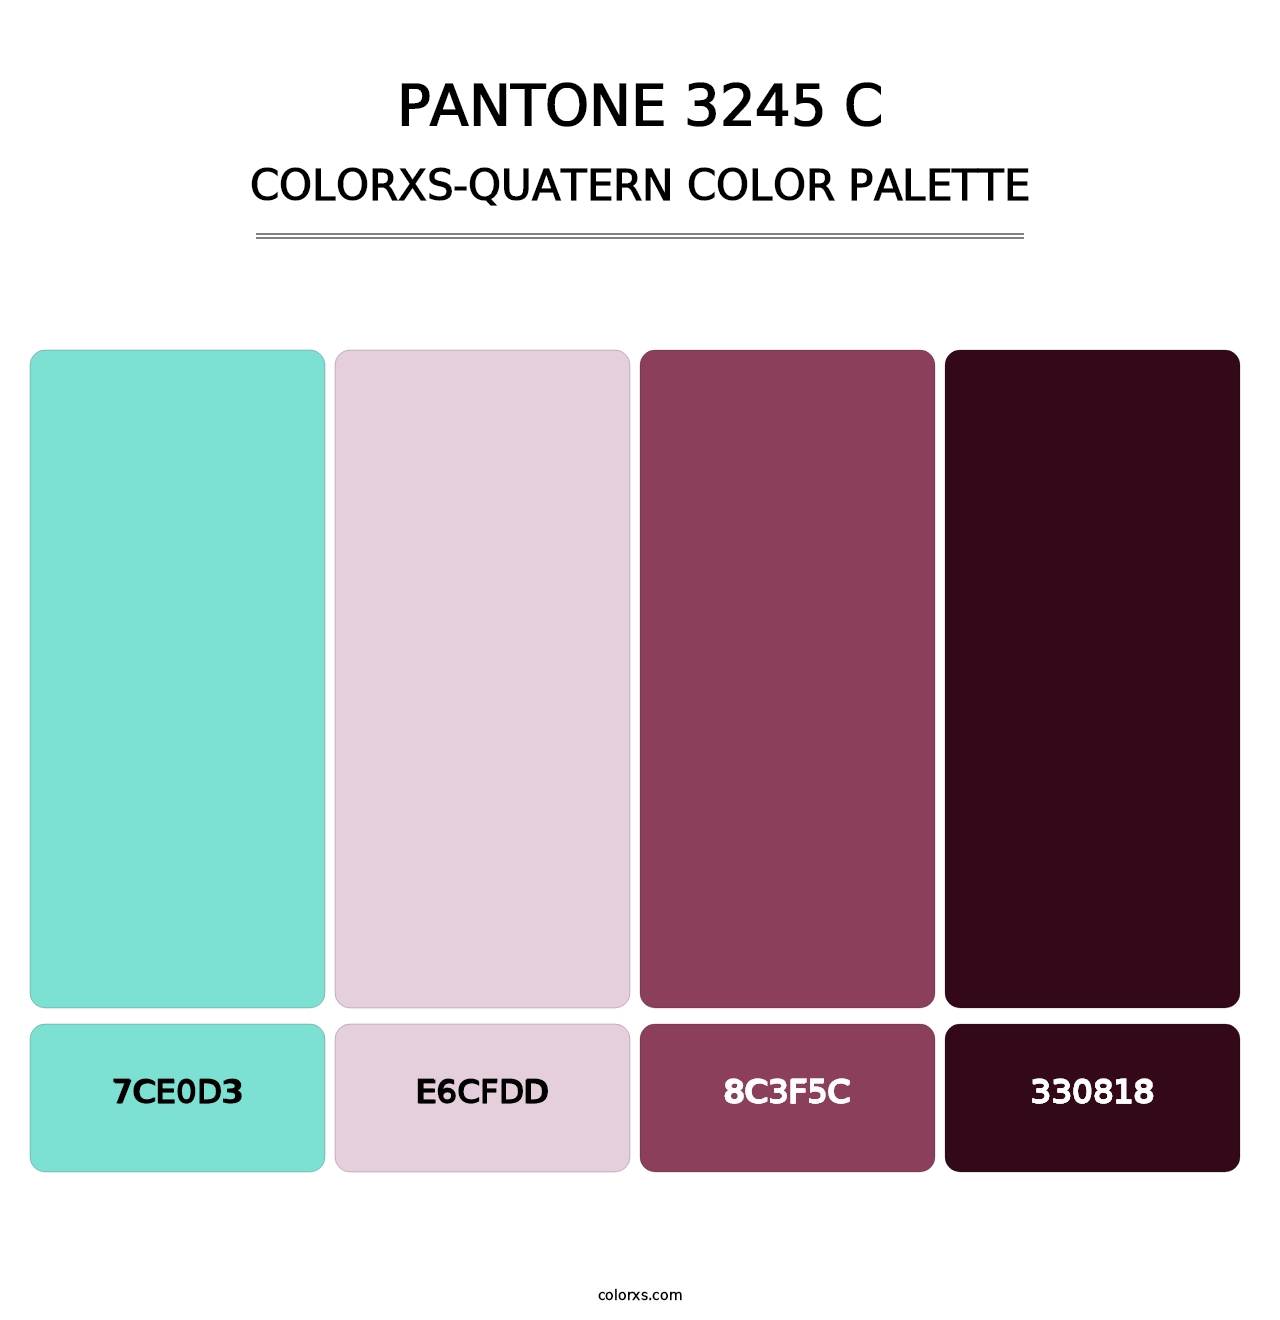 PANTONE 3245 C - Colorxs Quatern Palette